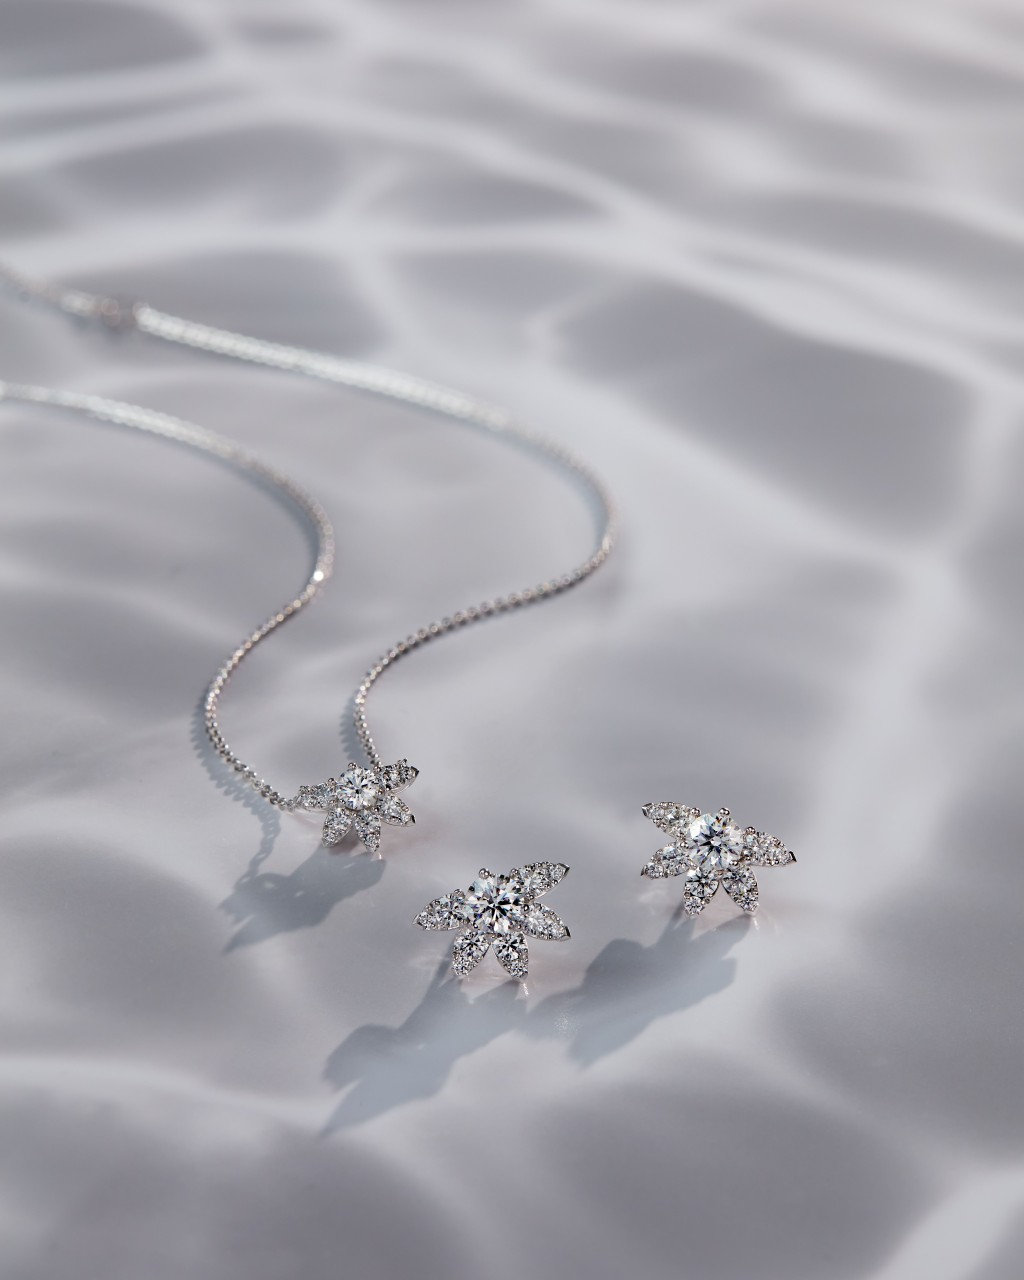 Aerial Sunburst鑽石耳環（大號）及項鏈，飾以欖尖形和梨形鑲嵌鑽石，恍如盛放的鮮花。耳環的周邊鑽石花瓣部分可拆下，作單顆圓鑽款式佩戴。